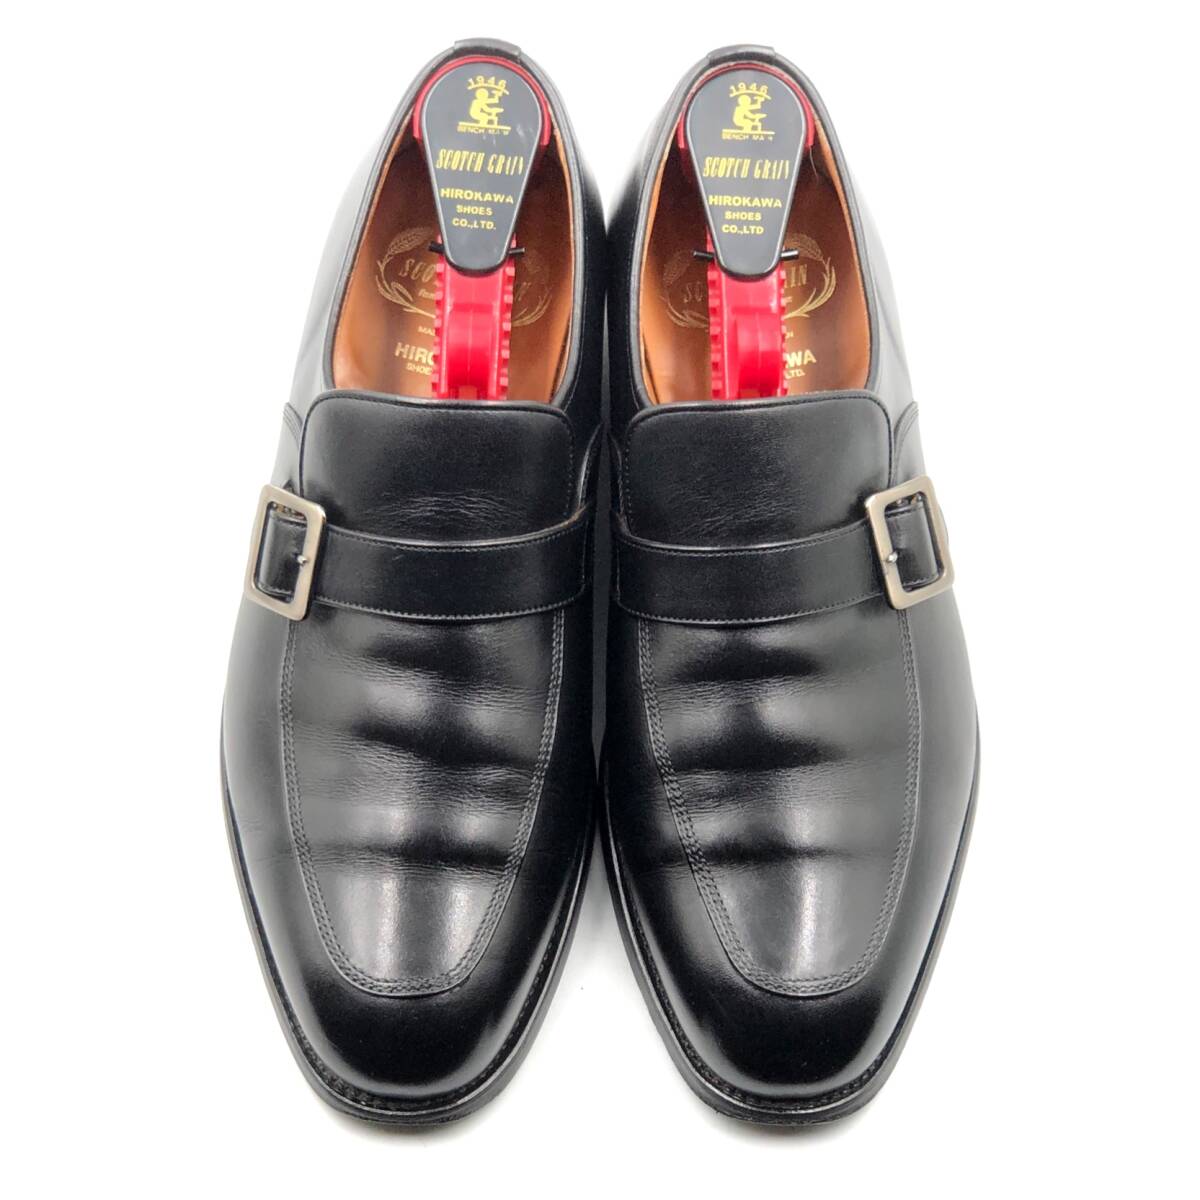 即決 SCOTCH GRAIN スコッチグレイン 25cmEEEE 4013 メンズ レザーシューズ モンクストラップ 黒 ブラック 革靴 皮靴 ビジネスシューズ